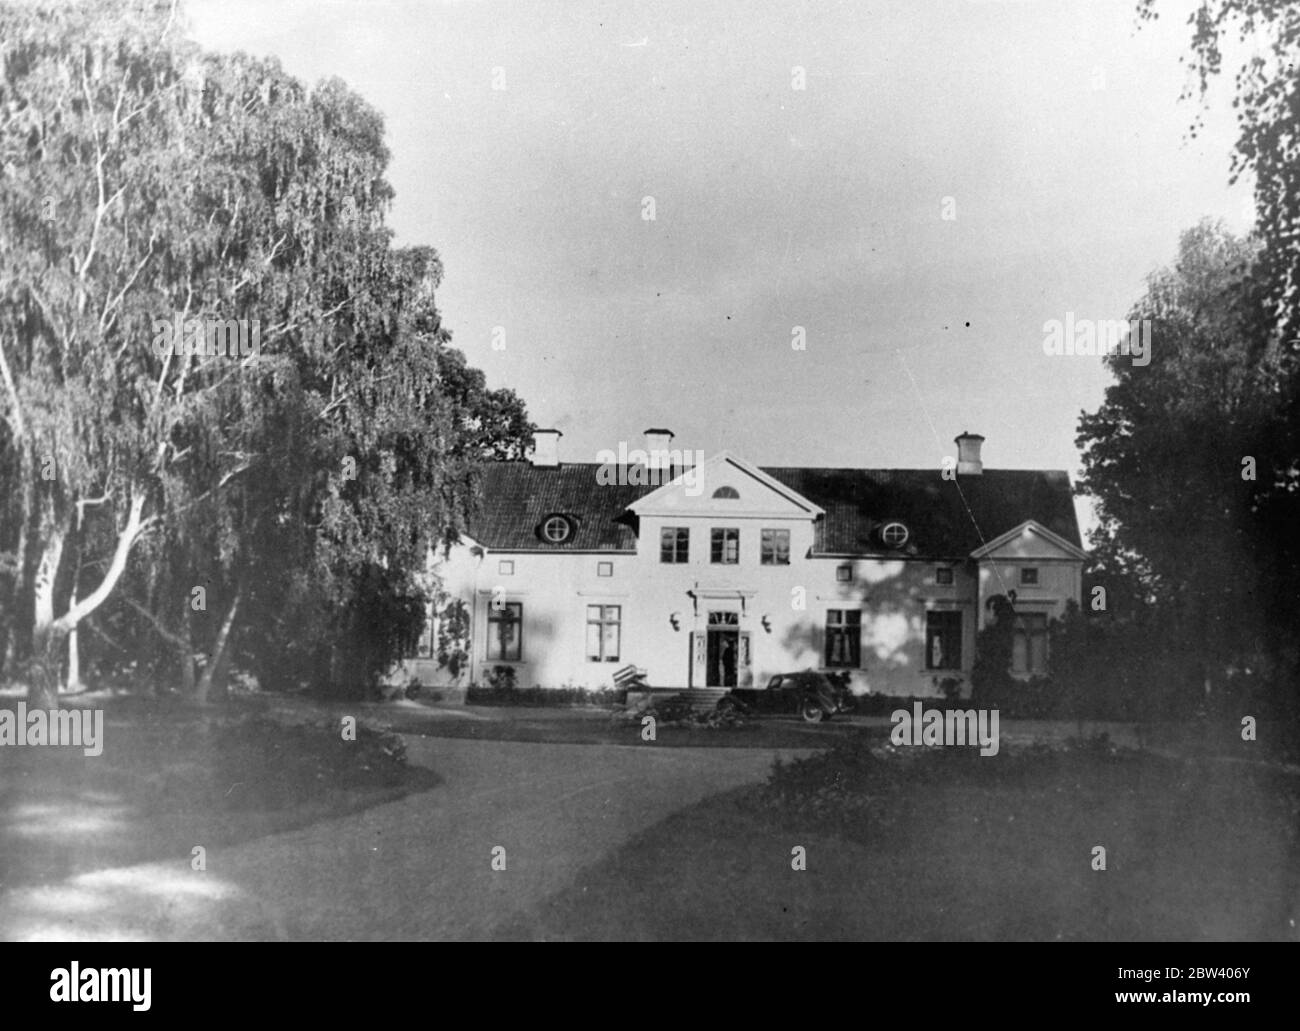 Où Greta Garbo peut être seul . GRETA Garbo , actrice suédoise , a acheté un domaine à Harby , à environ 40 miles de Stockholm . Le domaine , datant du XVIe siècle , comprend une ferme du XIXe siècle de 10 pièces ( qui a été modernisée ), située à côté d'un lac et entourée d'un parc de chênes anciens . L'achat a été effectué au nom de Mlle Garbo par son frère M. Gustavsson . Le prix est indiqué pour être 276000 couronnes , environ 14000 £ . On croit généralement que l'endroit a été acheté pour Greta Garbo comme une maison où elle peut rester libre de la publicité pendant sa visite à sa maison cou Banque D'Images